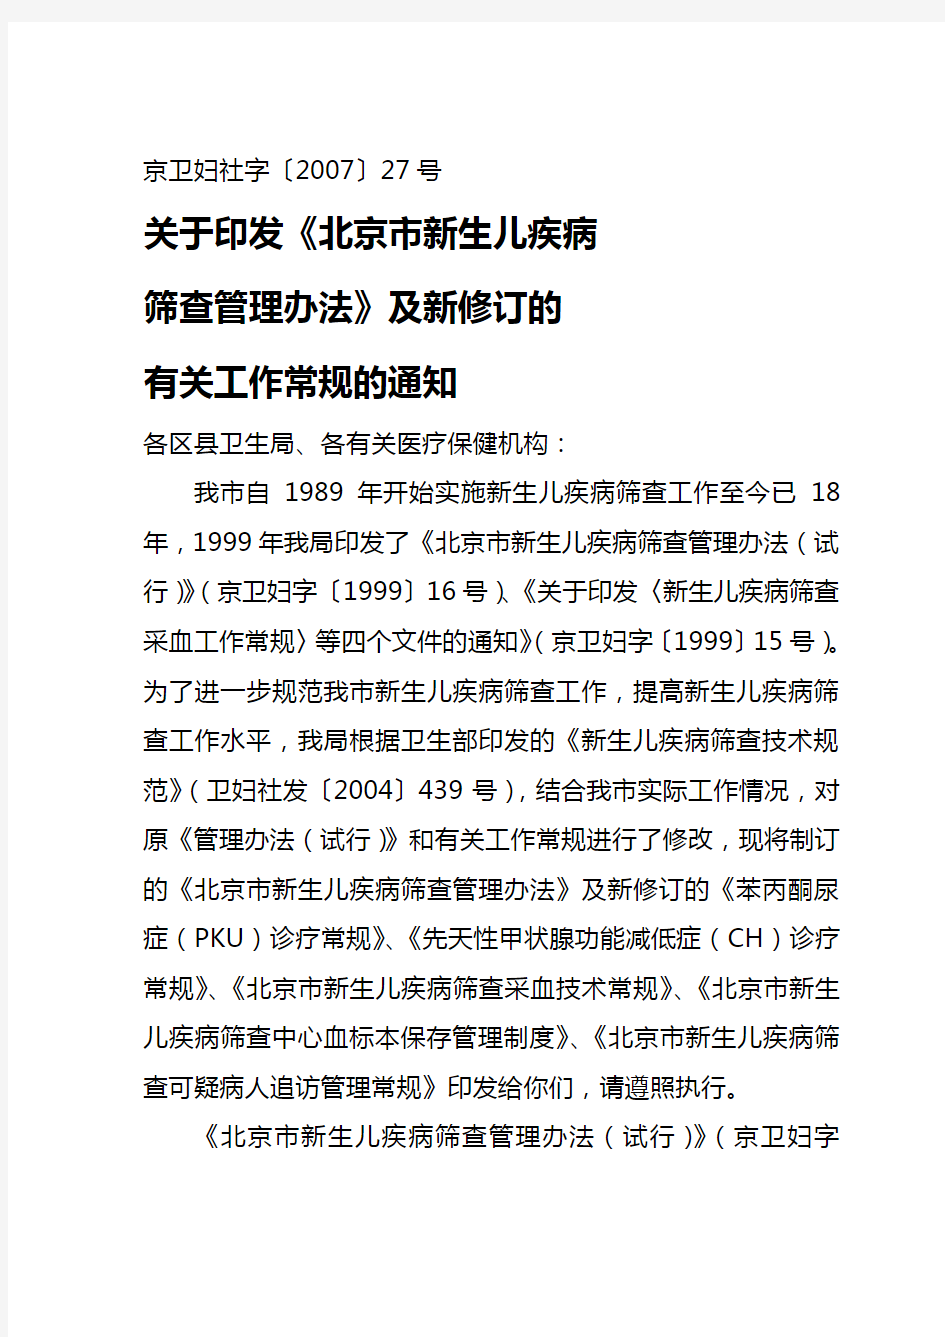 (精编)关于印发新修订的《北京市新生儿疾病筛查管理办法》及有关工作常